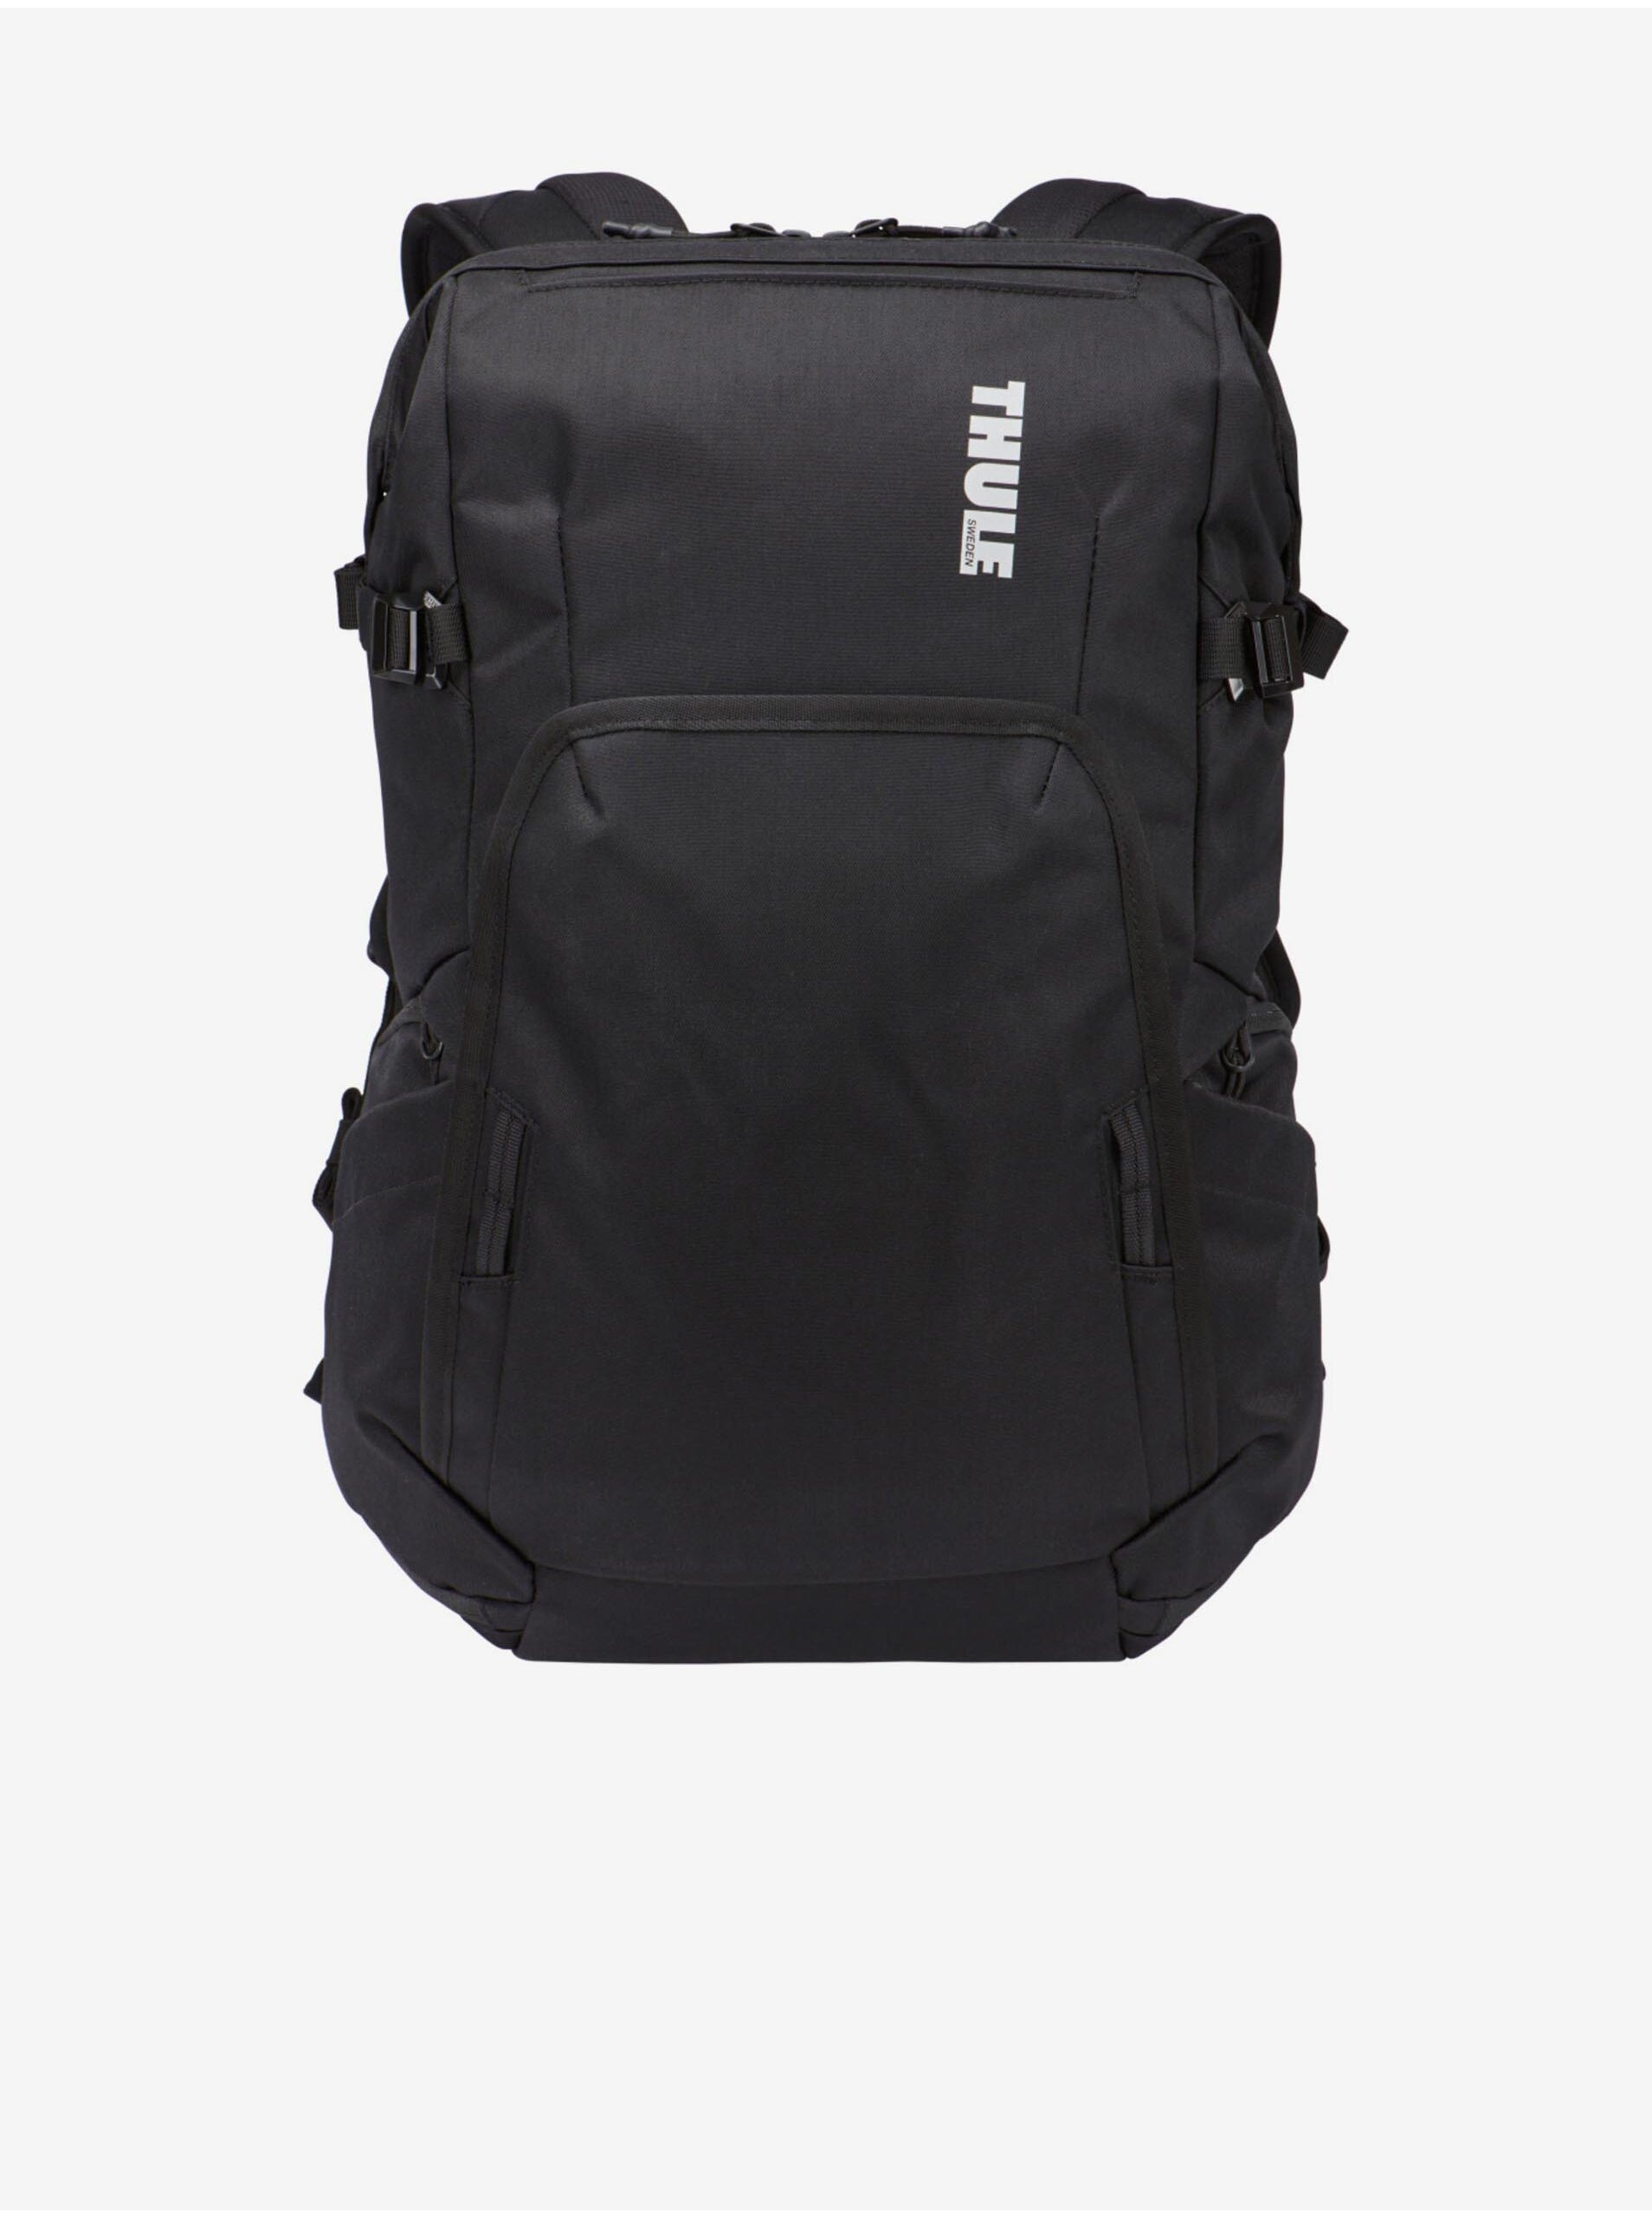 E-shop Černý pánský batoh s vyjímatelným pouzdrem na fotoaparát Thule Covert™